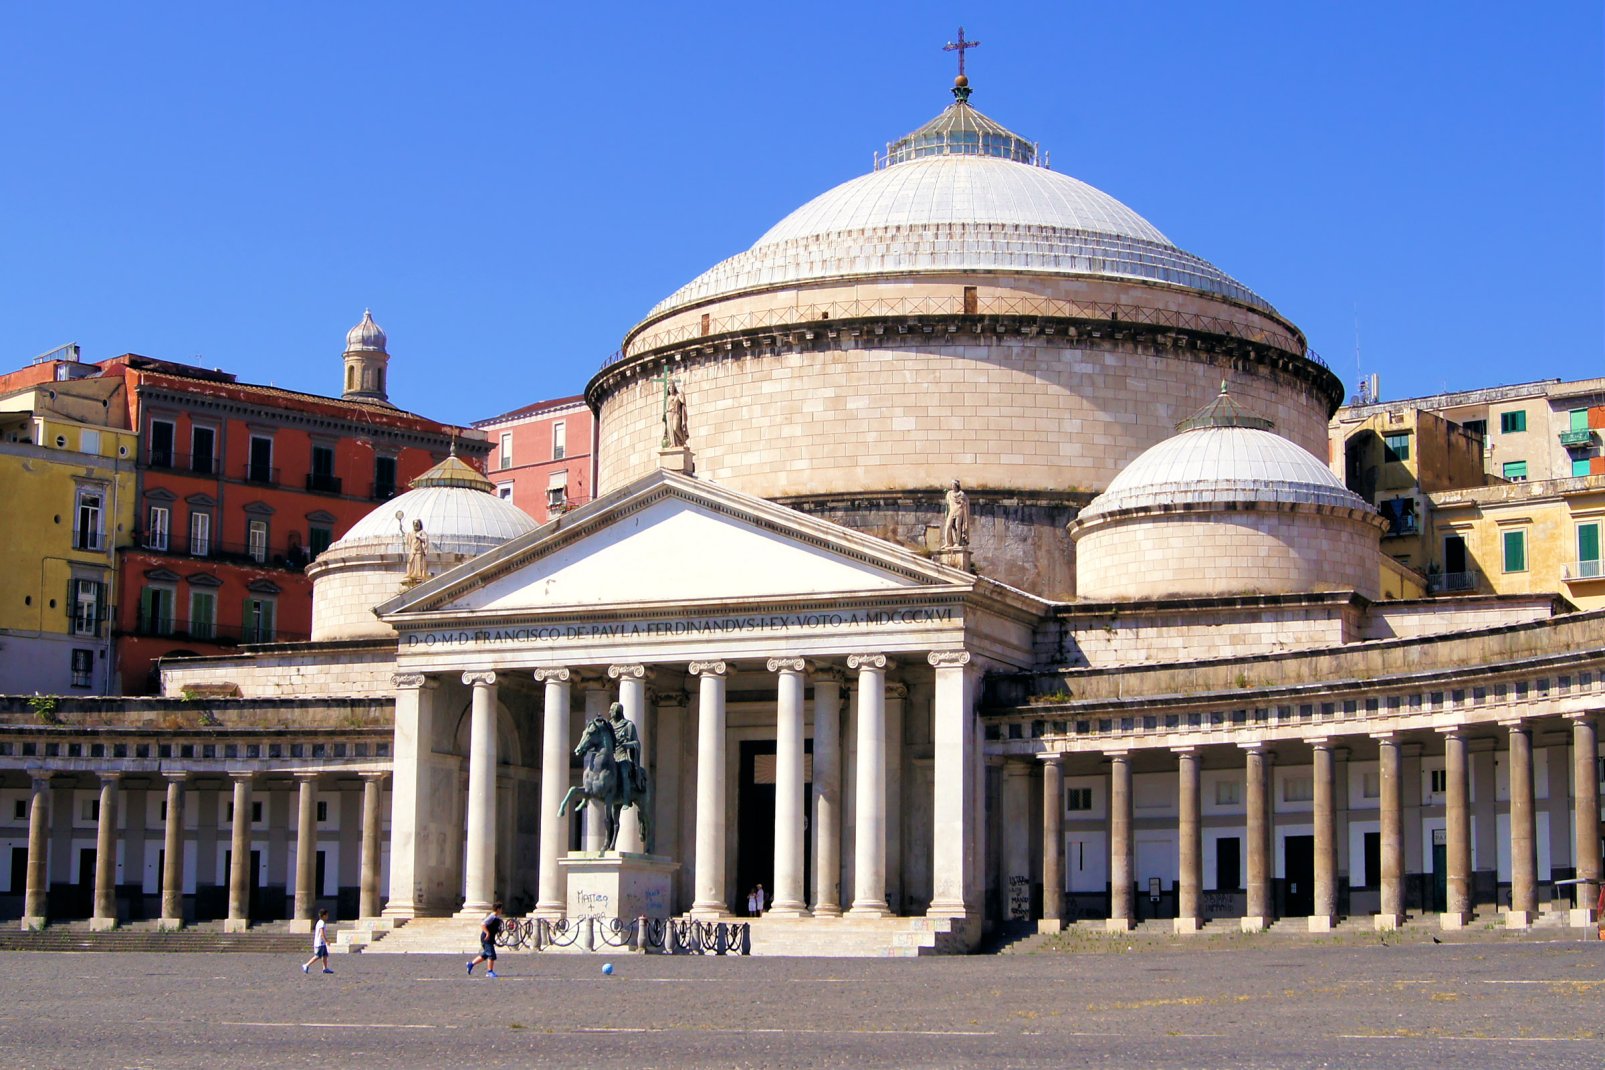 La monumentale place du Plebiscito, au c?ur de la cité est cernée par l'église S. Francesco di Paola et le Palais Royal.